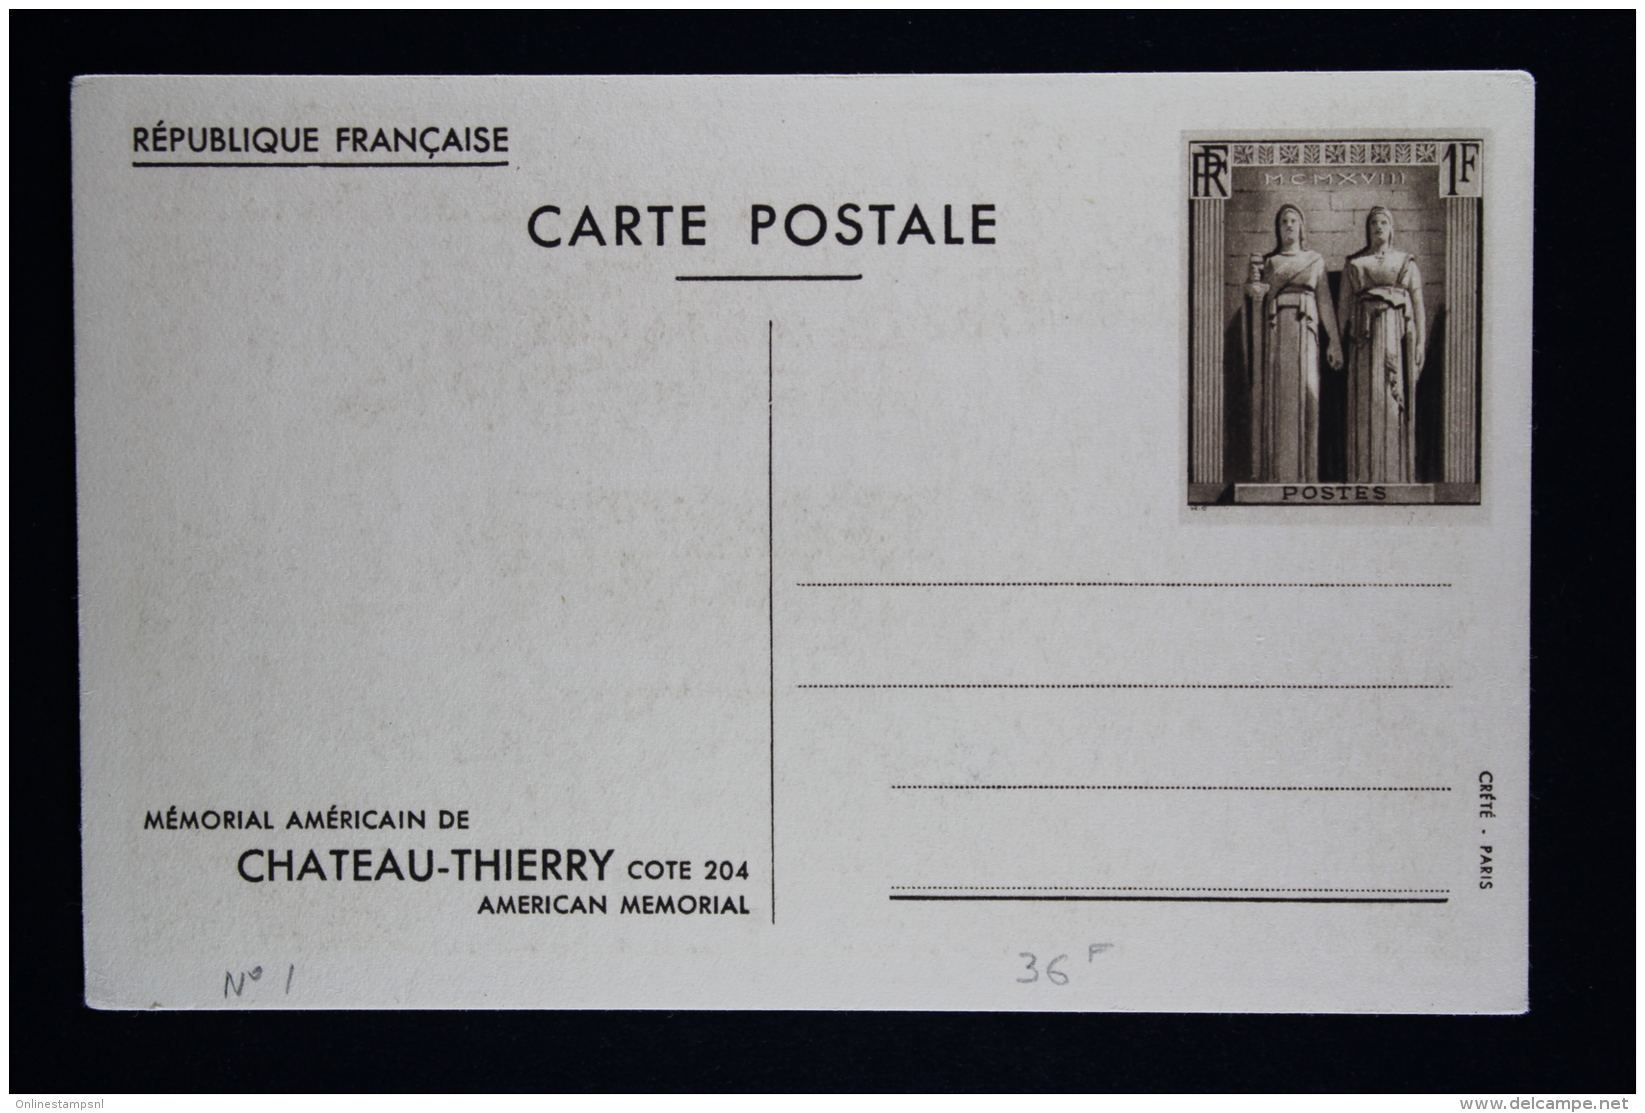 France: Card Postale  Memorial Americain de Chateau-Thierry   la série de 5 cartes  Type L1 S